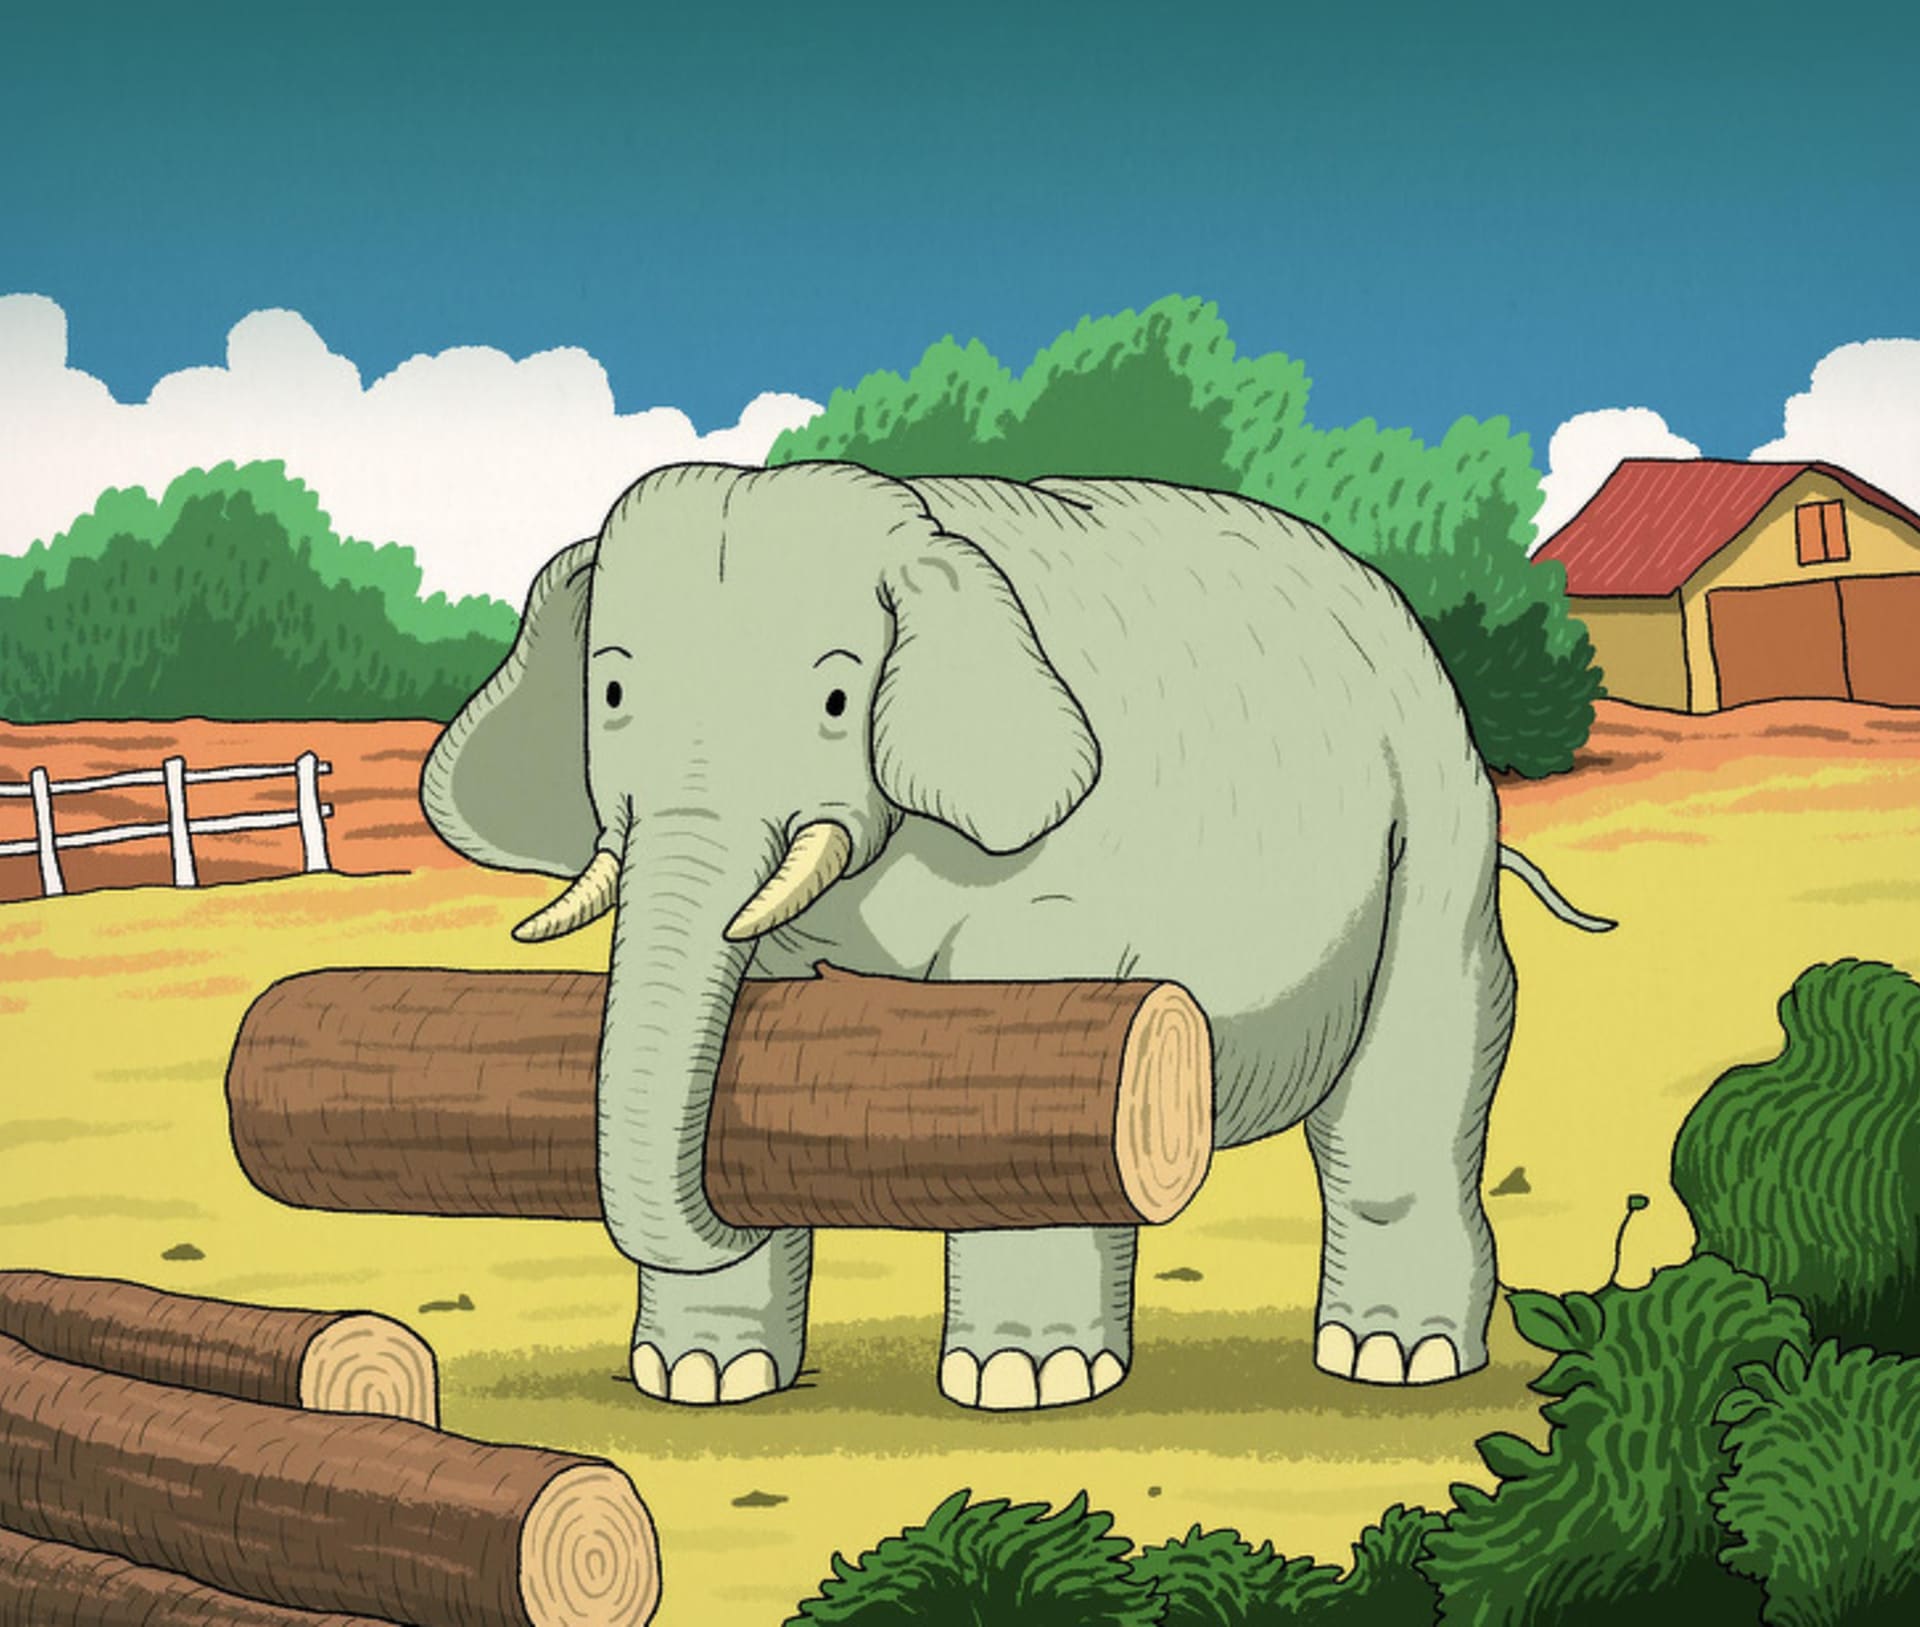 Najdete na obrázku se slonem ještě jedno zvíře?